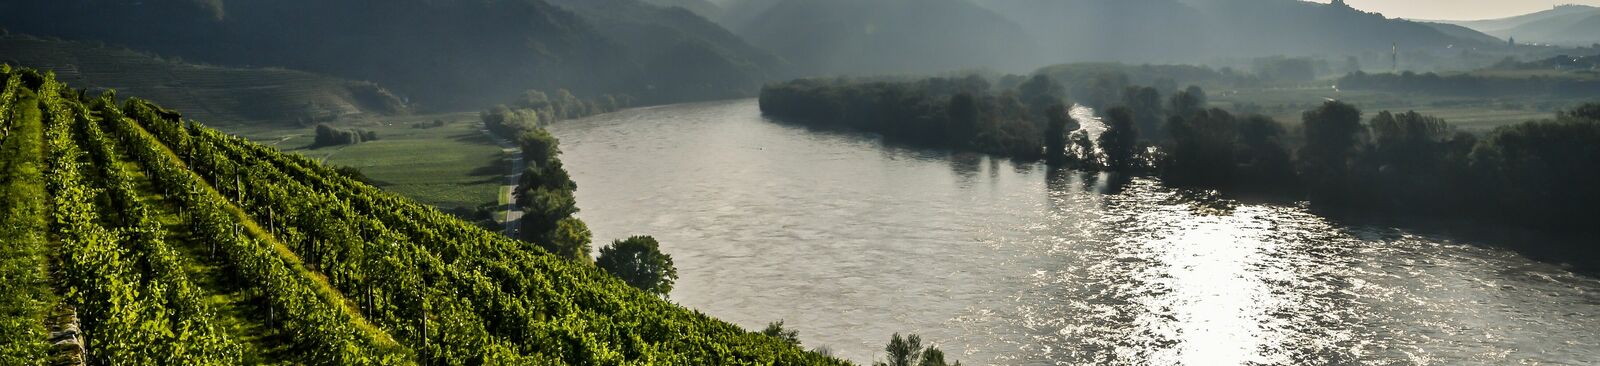 Auf dem Welterbesteig Wachau umrunden Wander*innen in 14 Etappen eine der schönsten Flusslandschaften Europas.